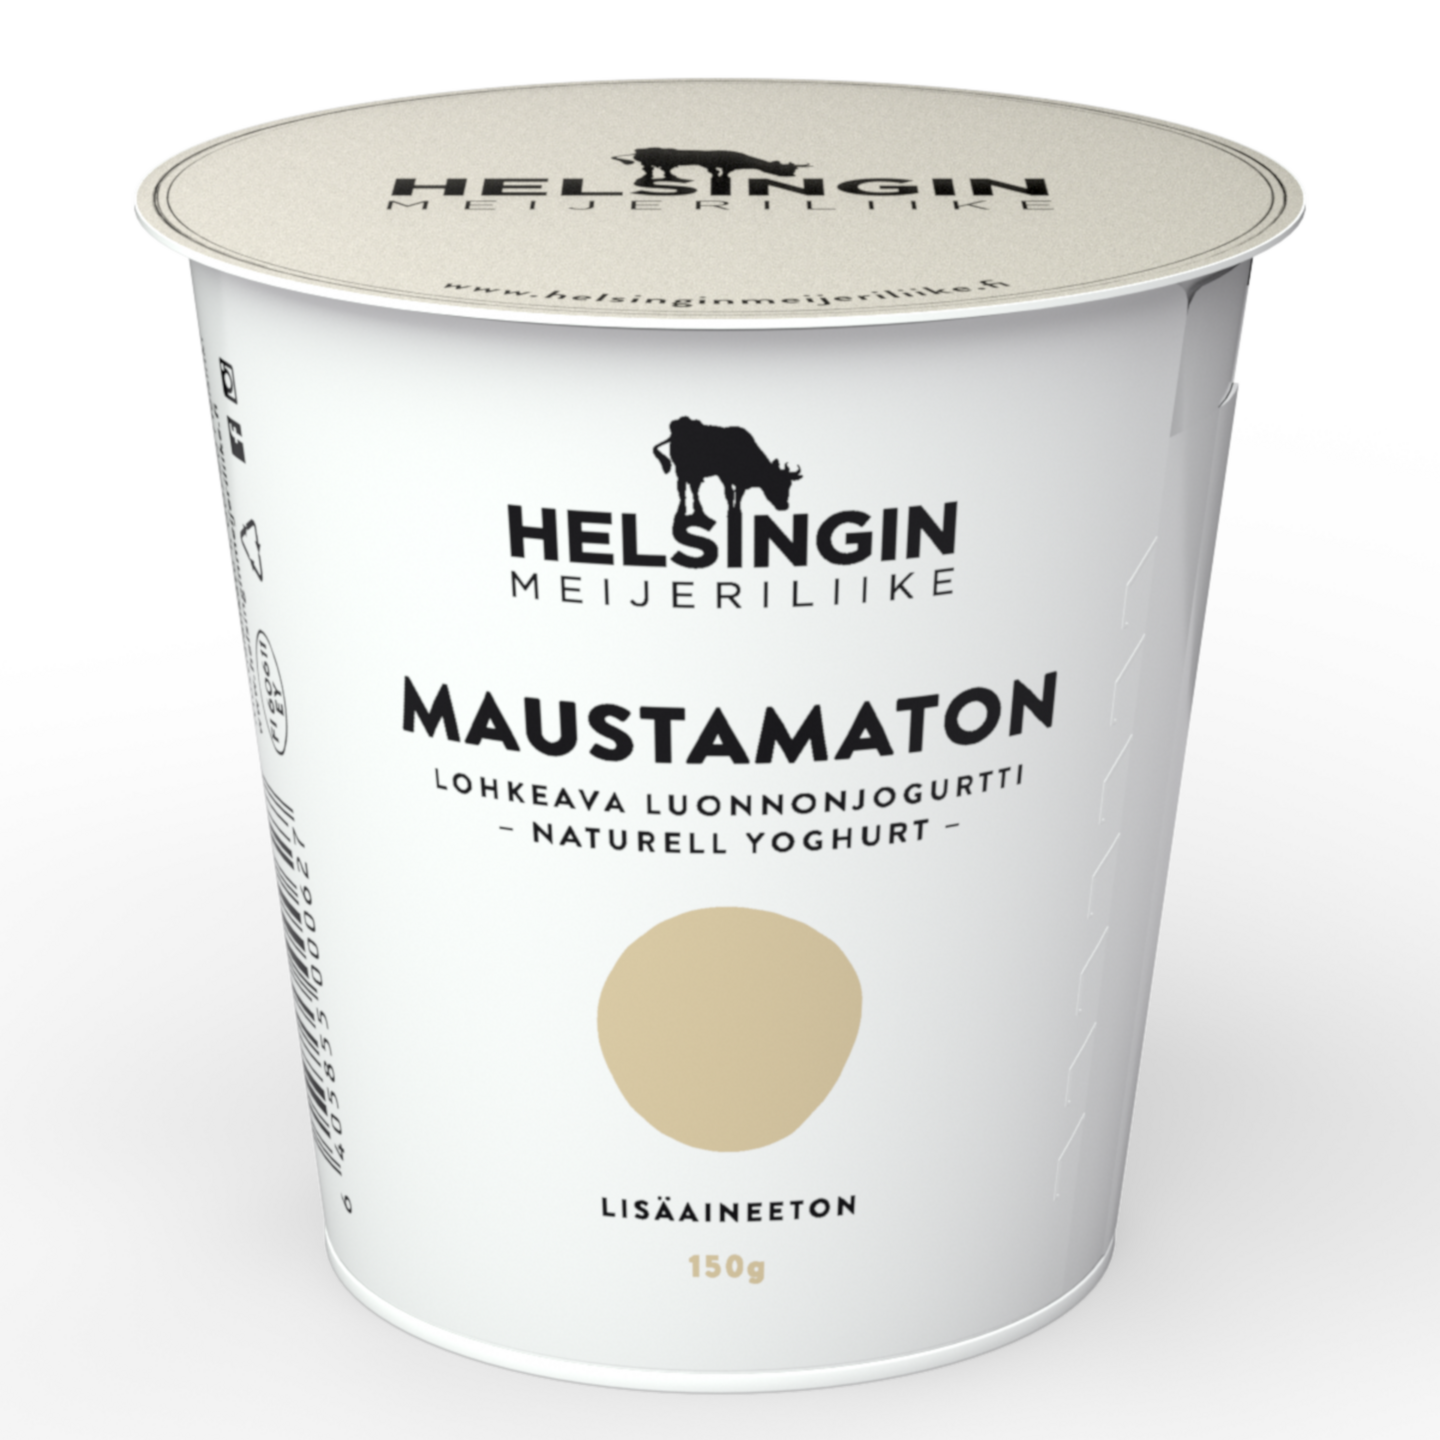 Helsingin Meijeriliike luonnonjogurtti 150g